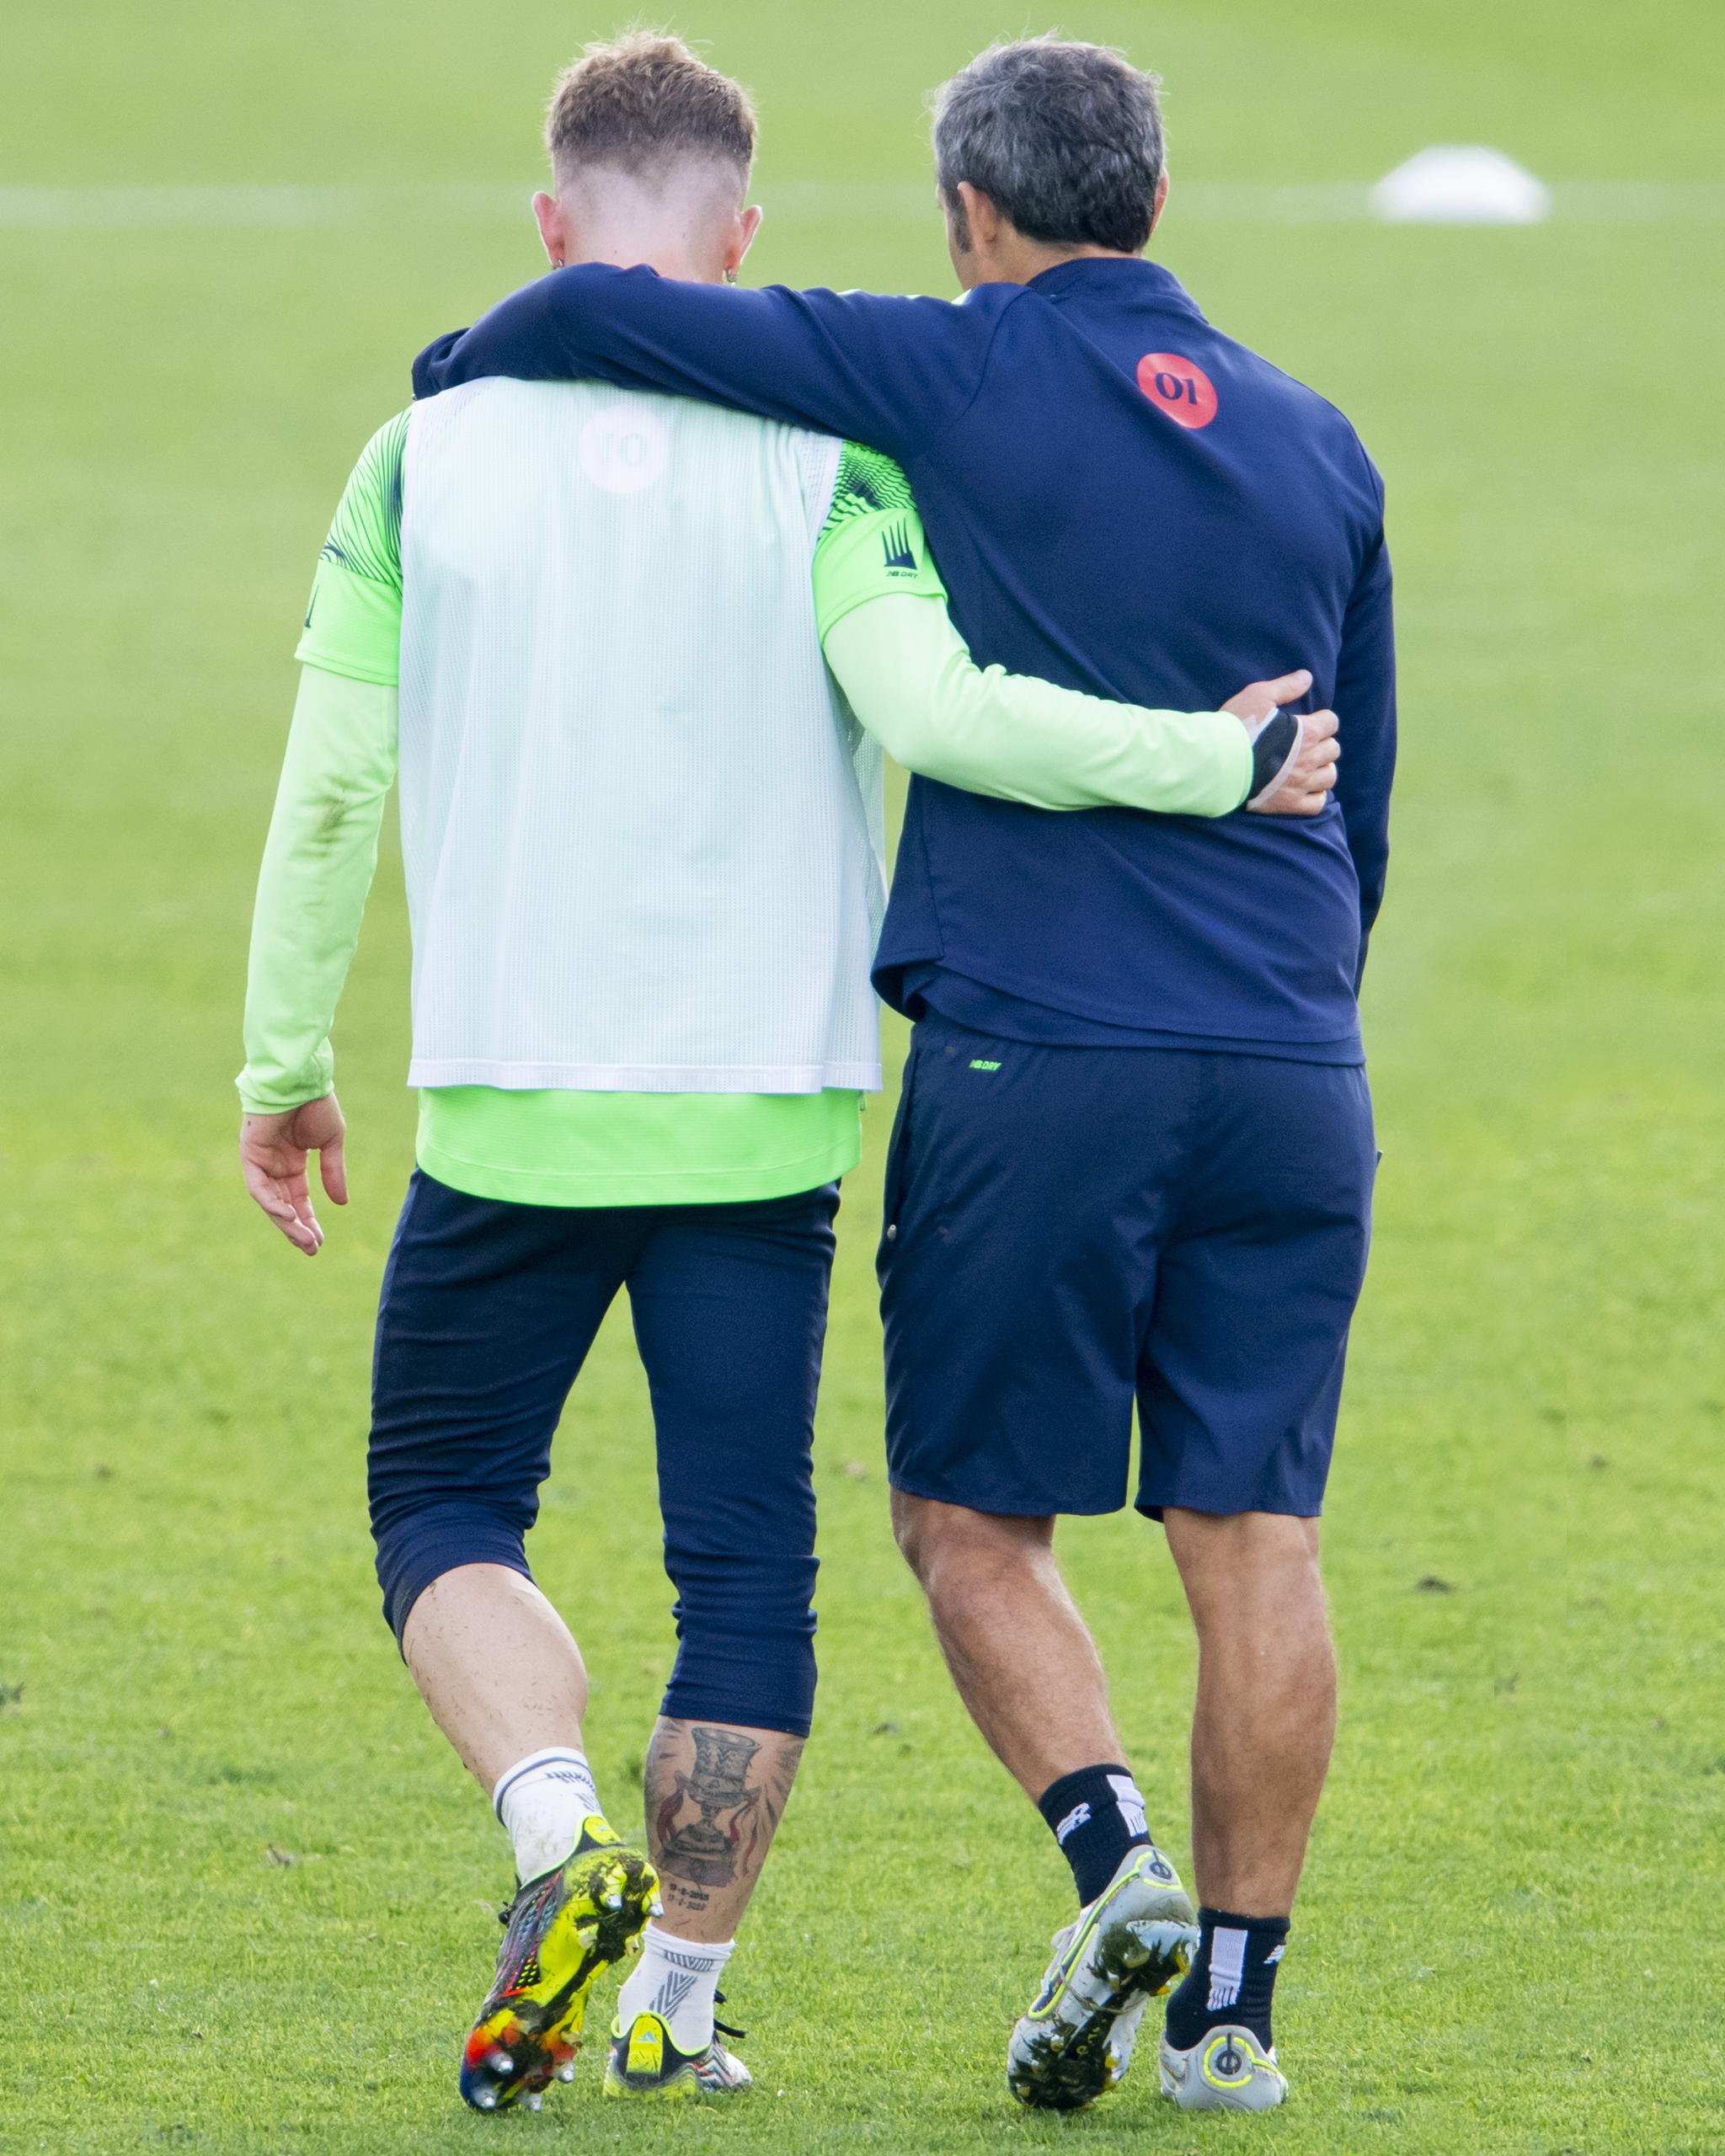 Valverde y Muniain, capitán del equipo, charla en actitud de máxima complicidad en uno de los últimos entrenamientos previos al parón.